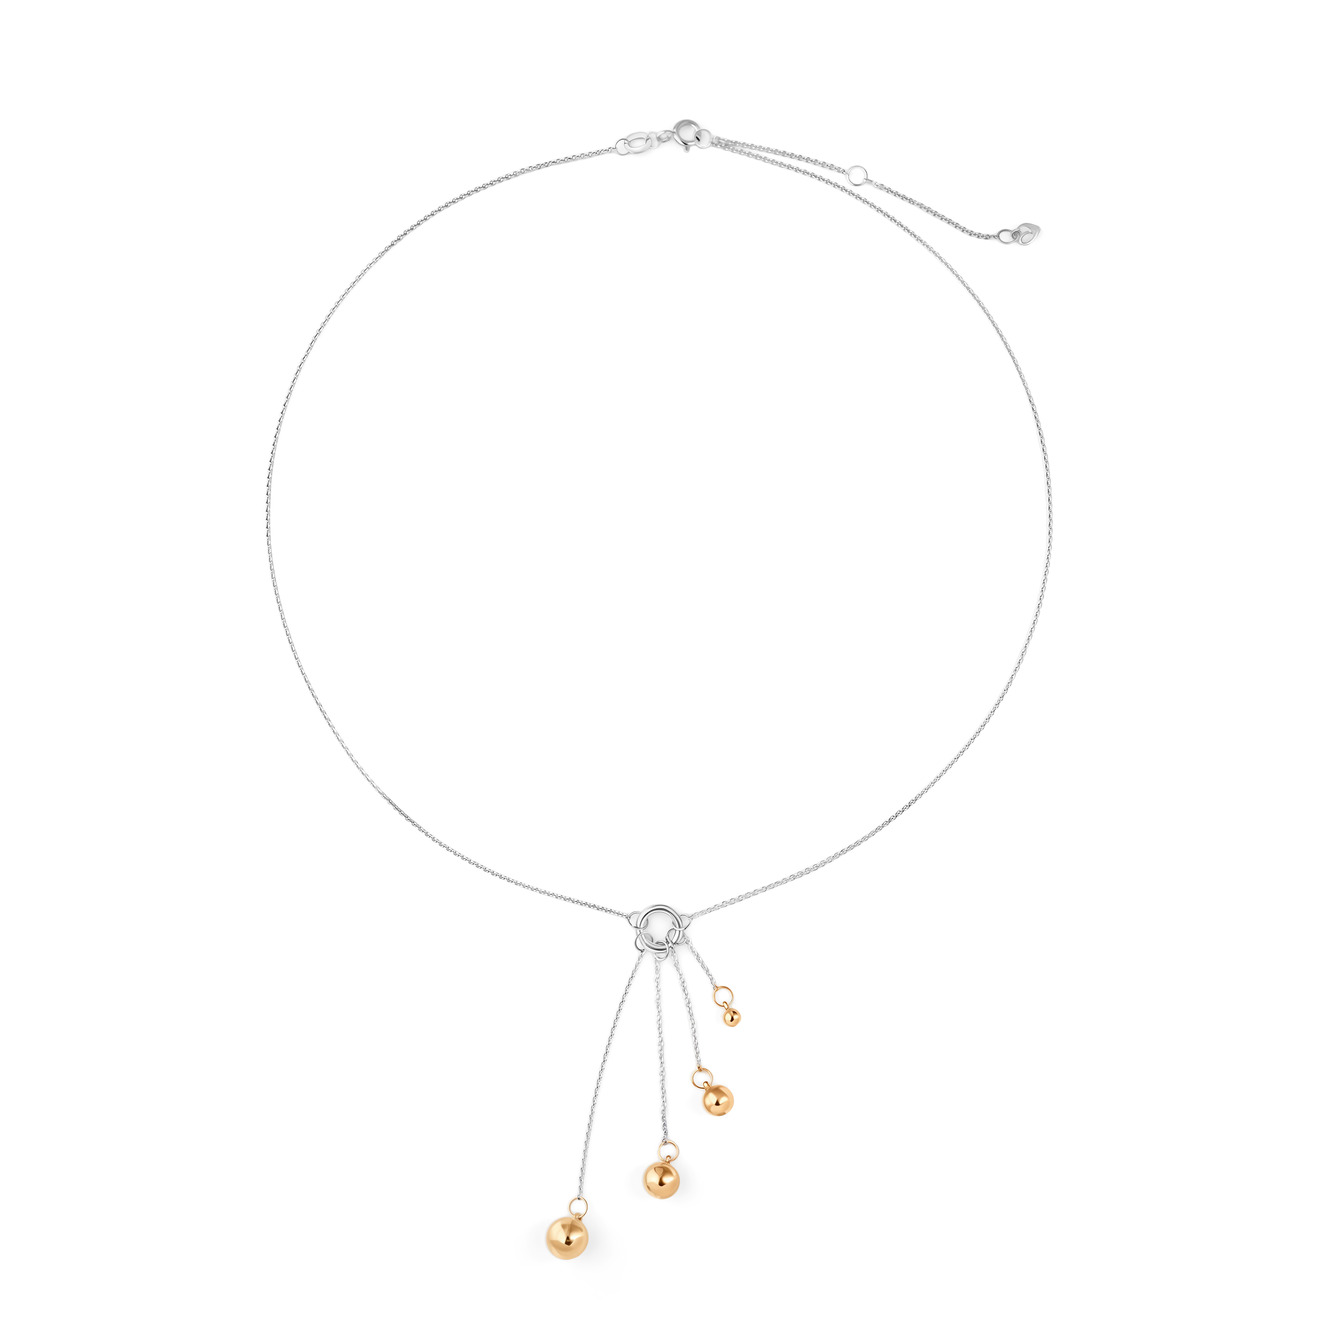 ура jewelry кольцо из серебра с позолоченными шариками на цепочке УРА jewelry Подвеска Шары из серебра с позолоченными шариками